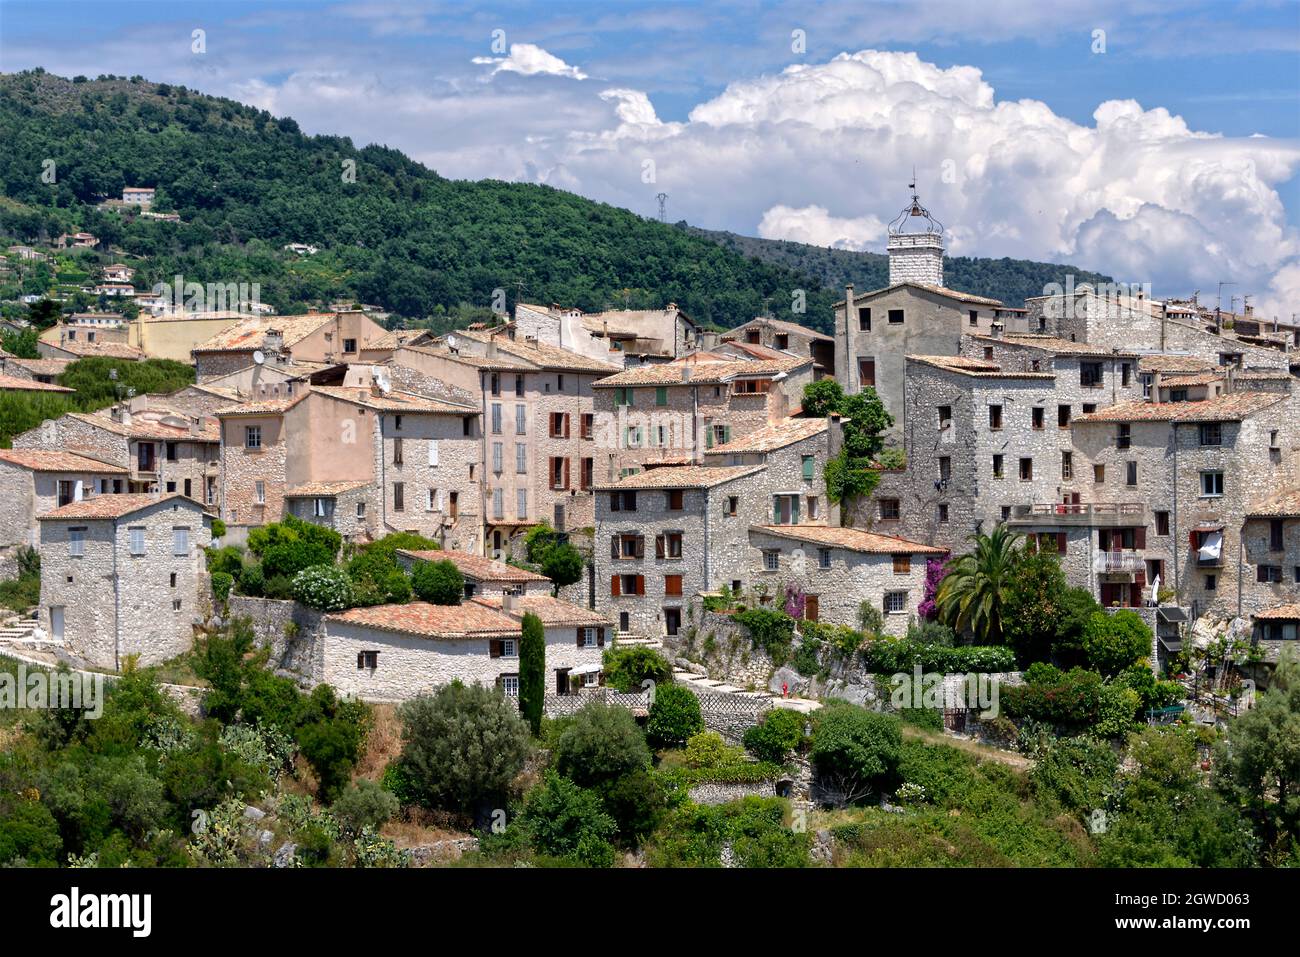 Dorf von Tourrettes-Sur-Loup, eine Gemeinde im Département Alpes-Maritimes im Südosten Frankreichs Stockfoto